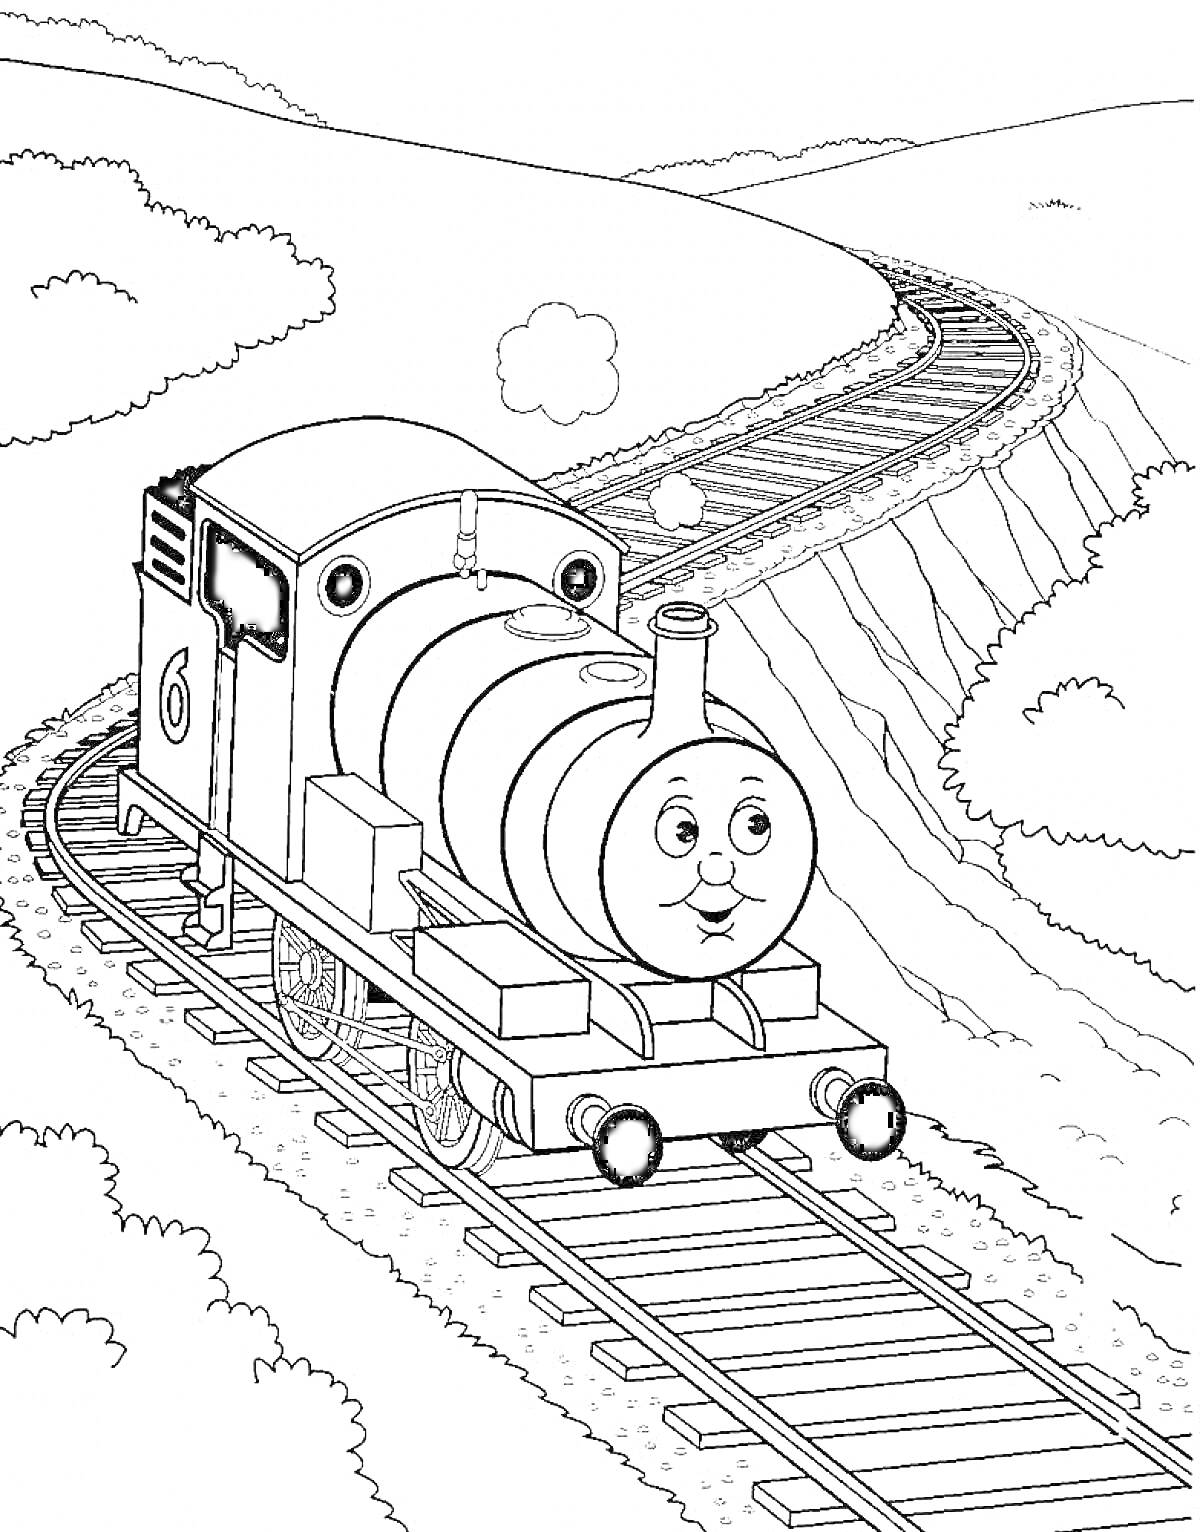 Паровозик Томас на железнодорожных путях с округлыми холмами и облаками